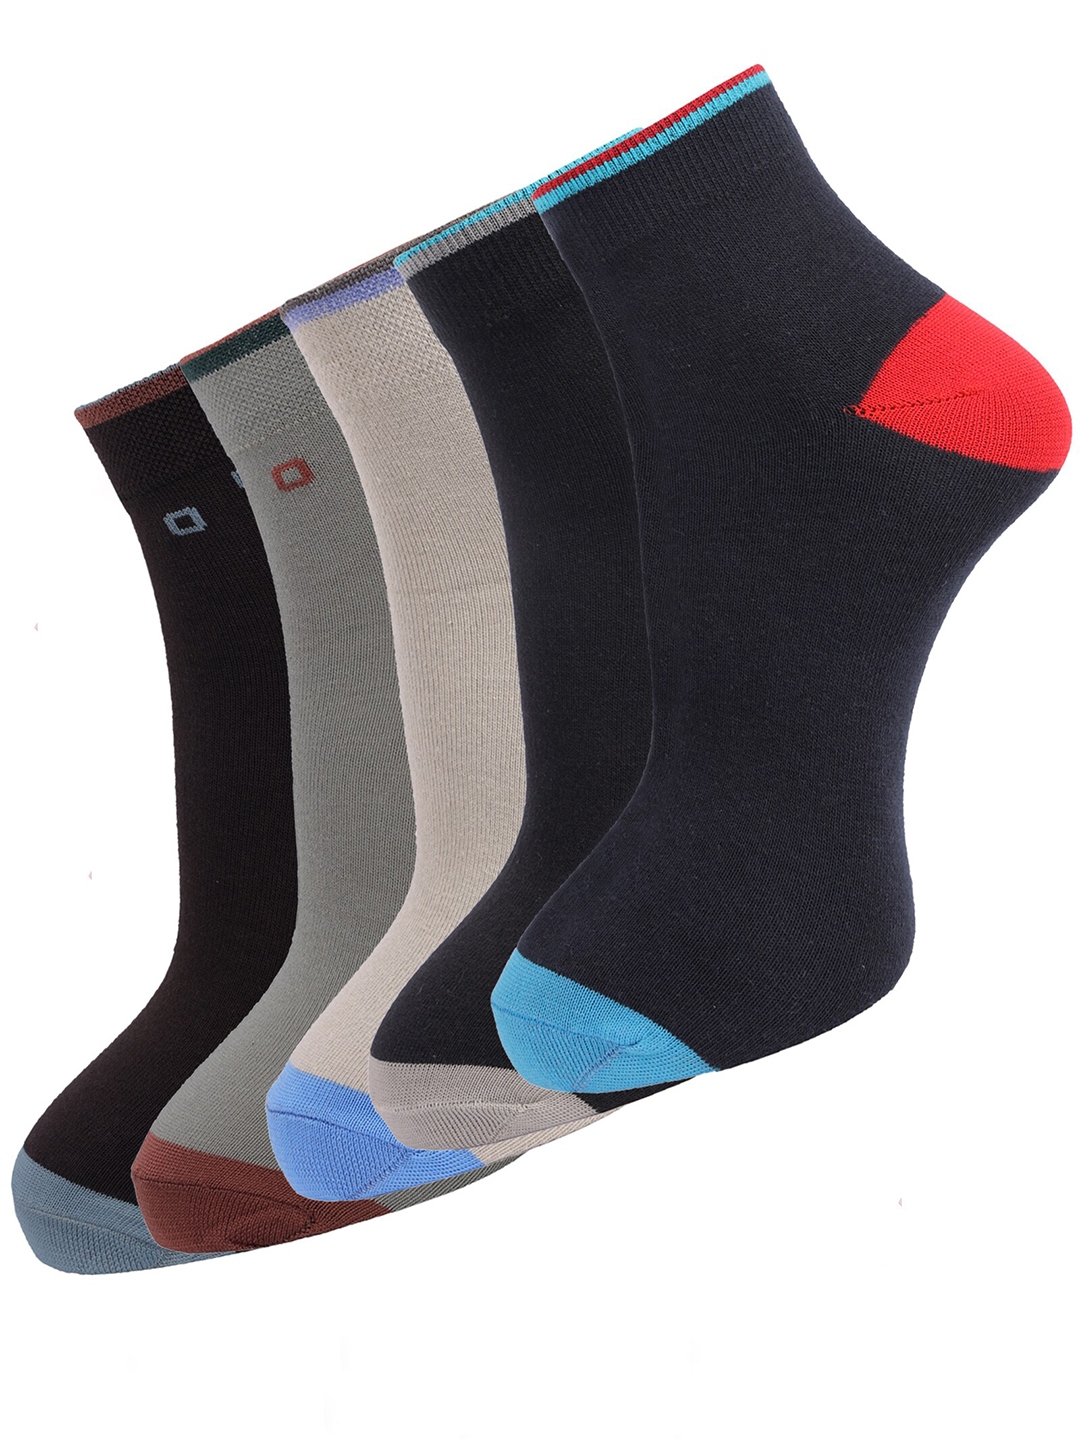 Buy Dollar Socks Men Pack Of 5 Assorted Cotton Ankle Length Socks ...